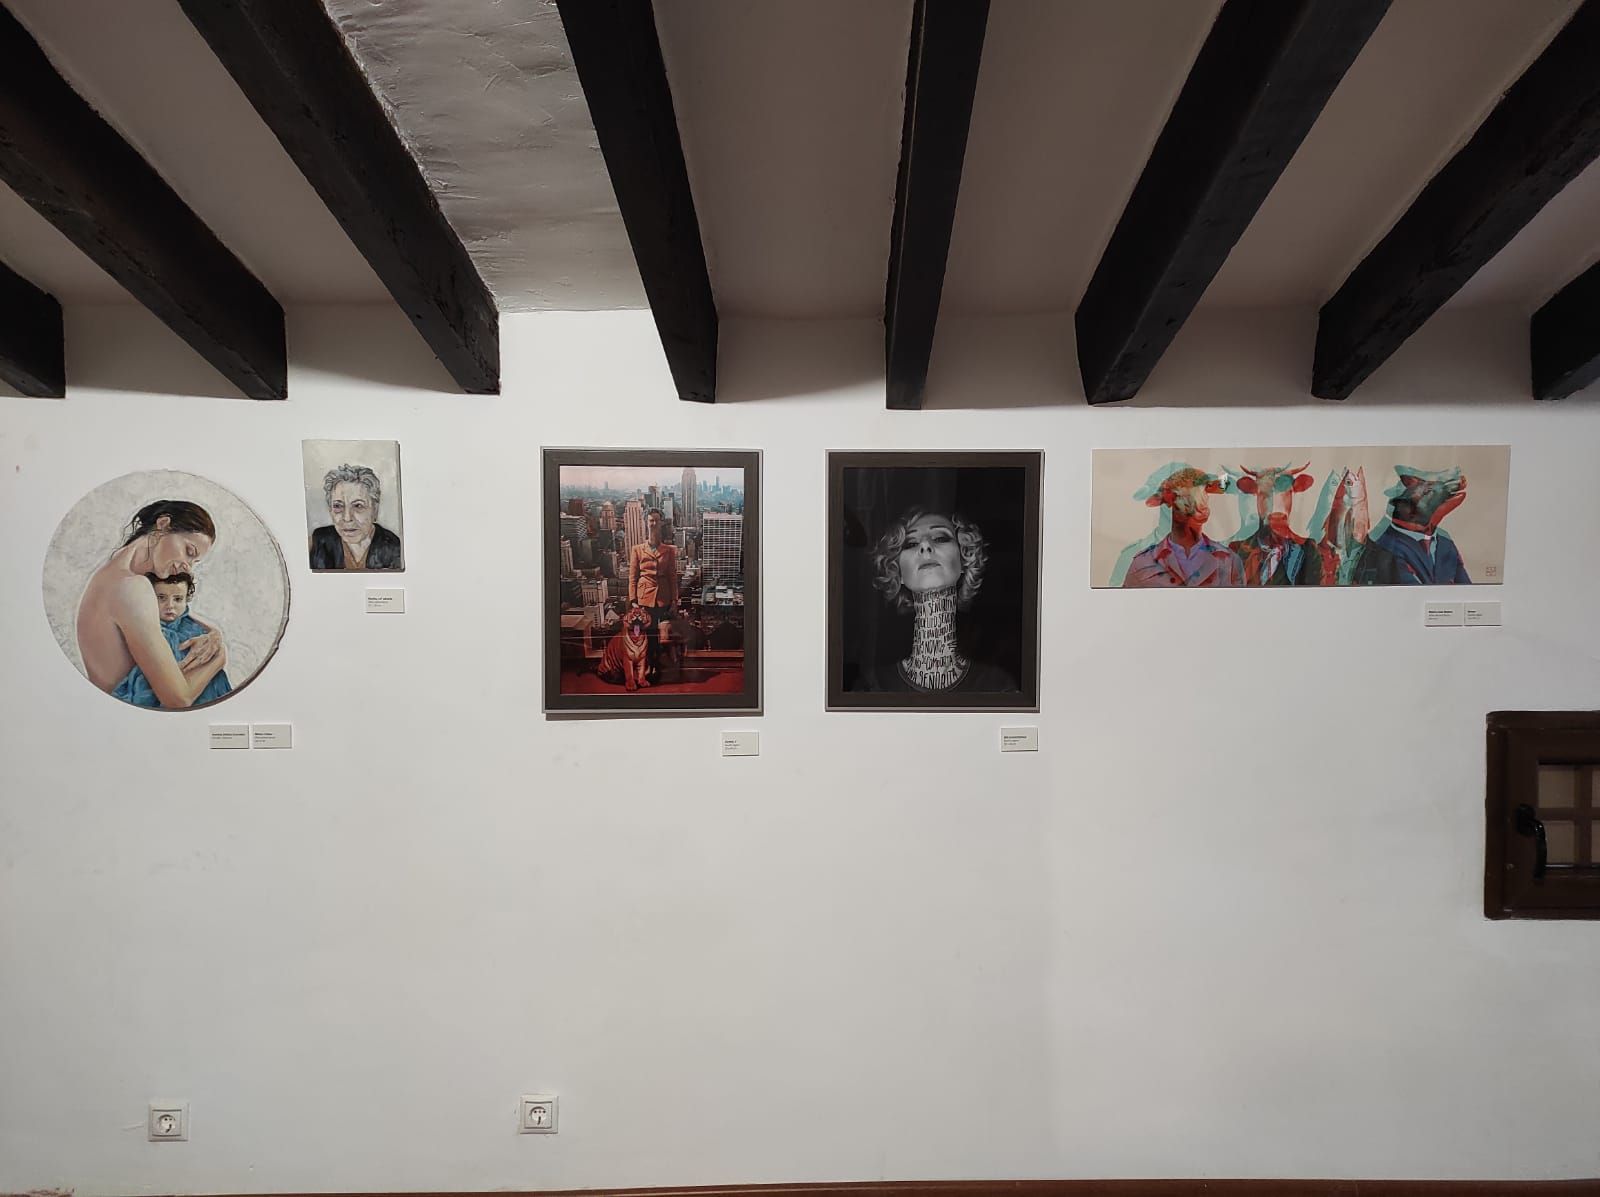 Mujeres Artistas Rurales de La Serranía (MAR) inauguran una exposición itinerante